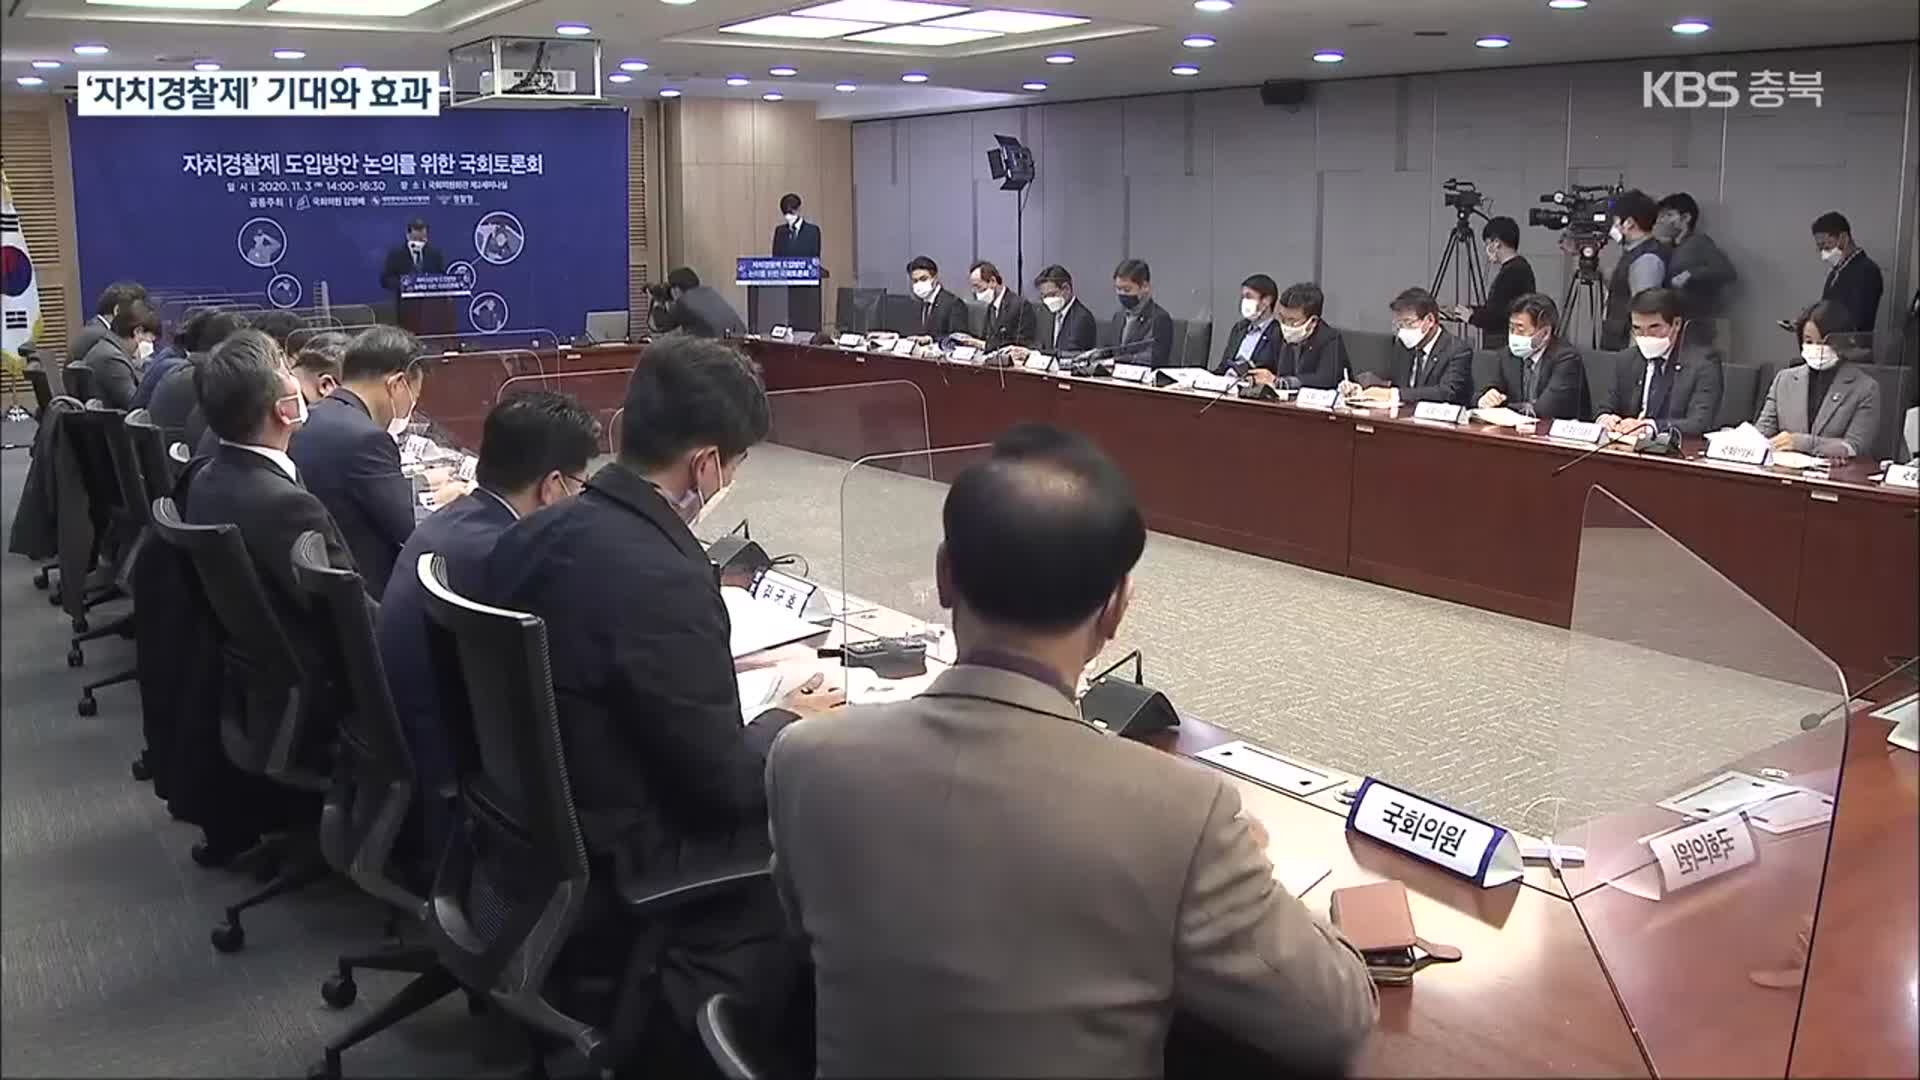 ‘자치경찰제’ 경찰 조직 개편…충북의 변화와 과제는?